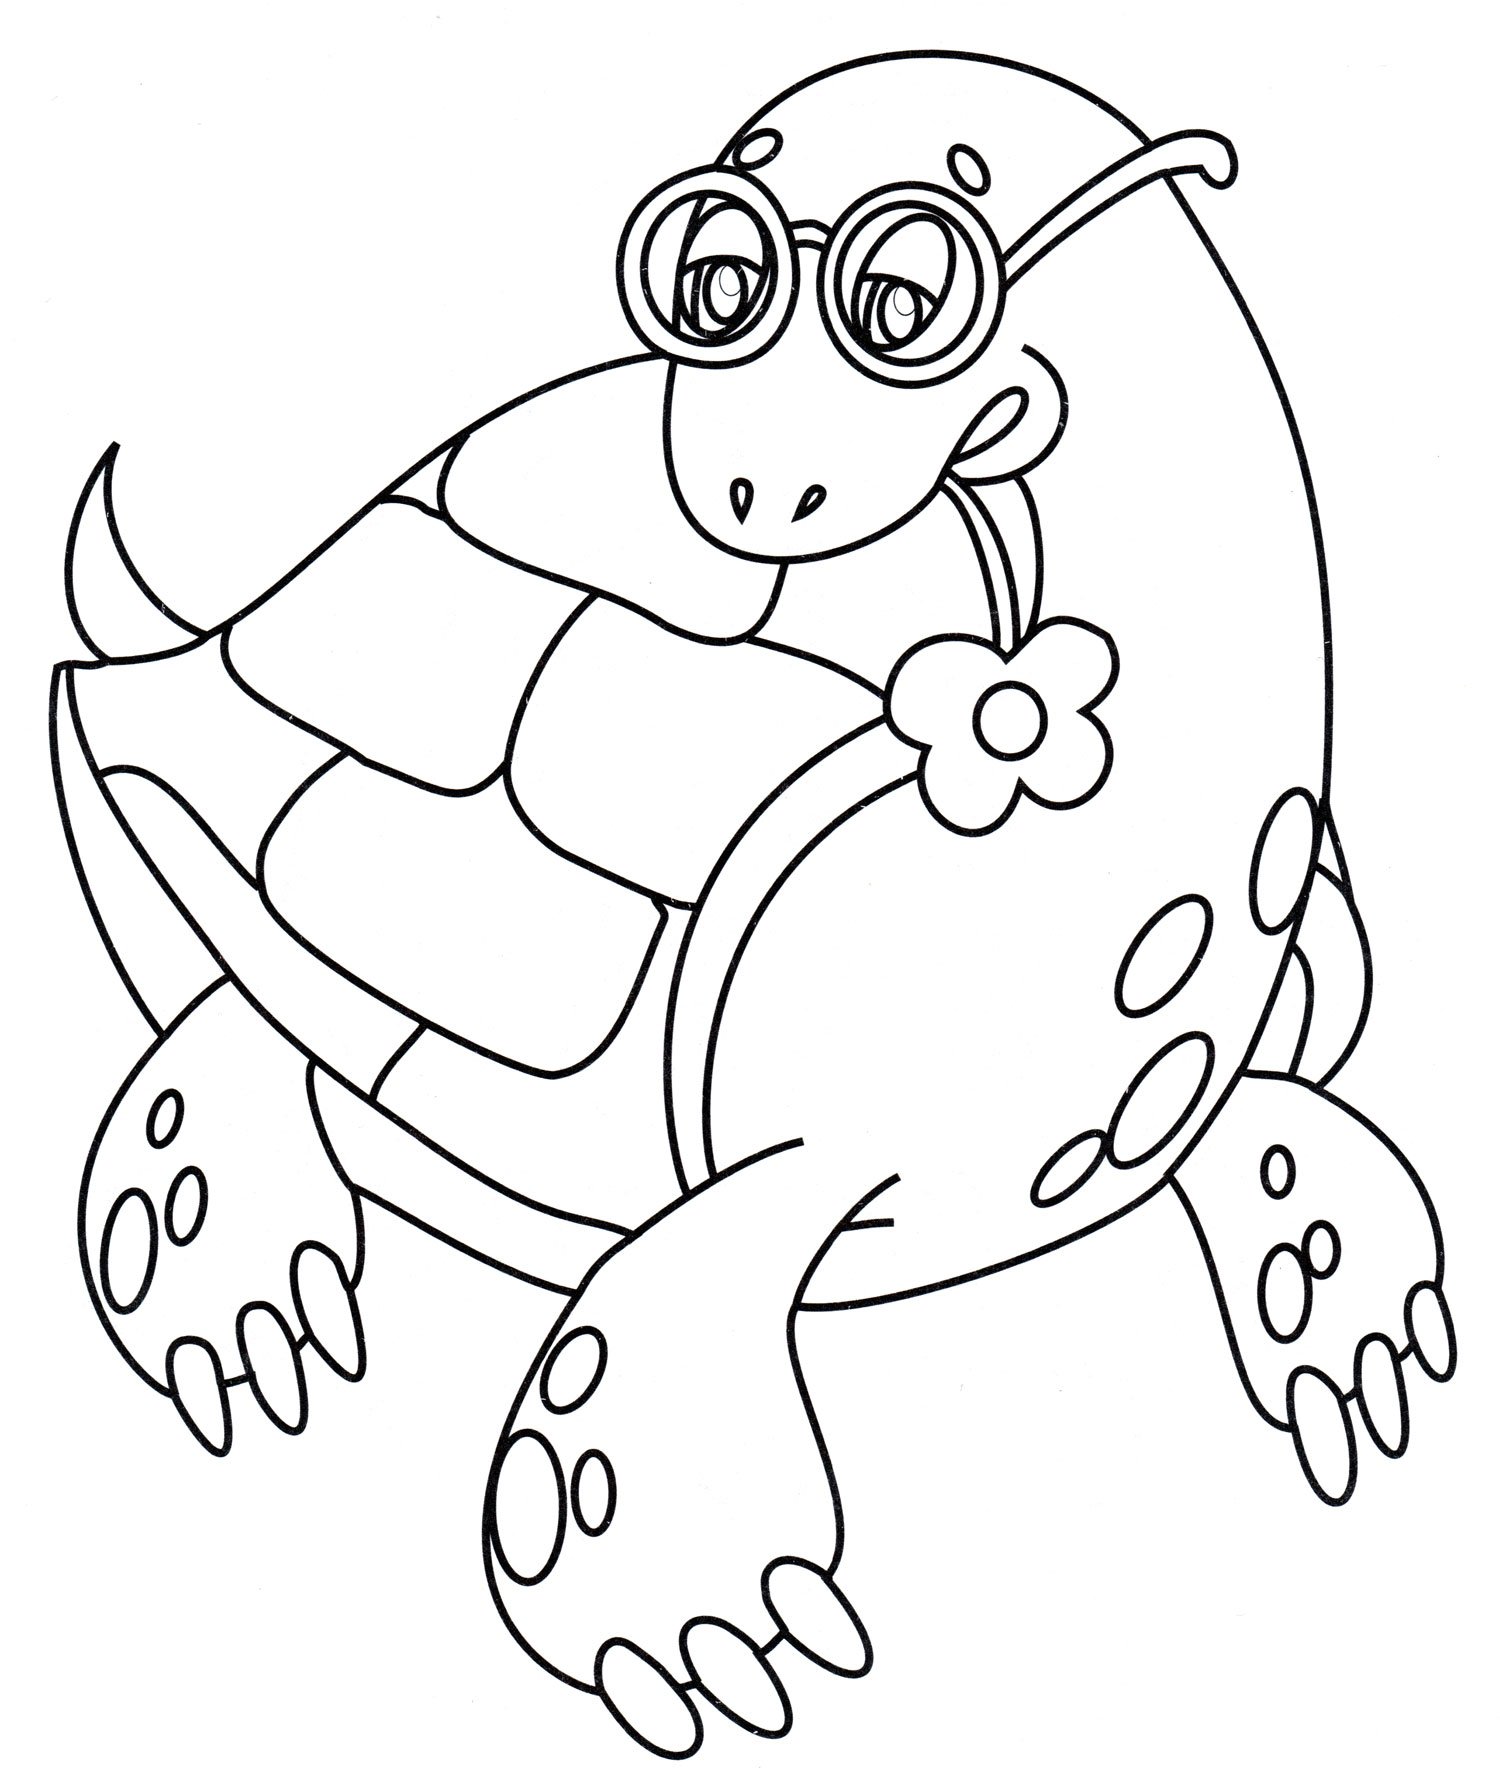 Черепаха в очках картинка. Раскраска черепаха. Черепашка раскраска для детей. Черепаха раскраска для малышей. Raskrasksa cherepaxa.